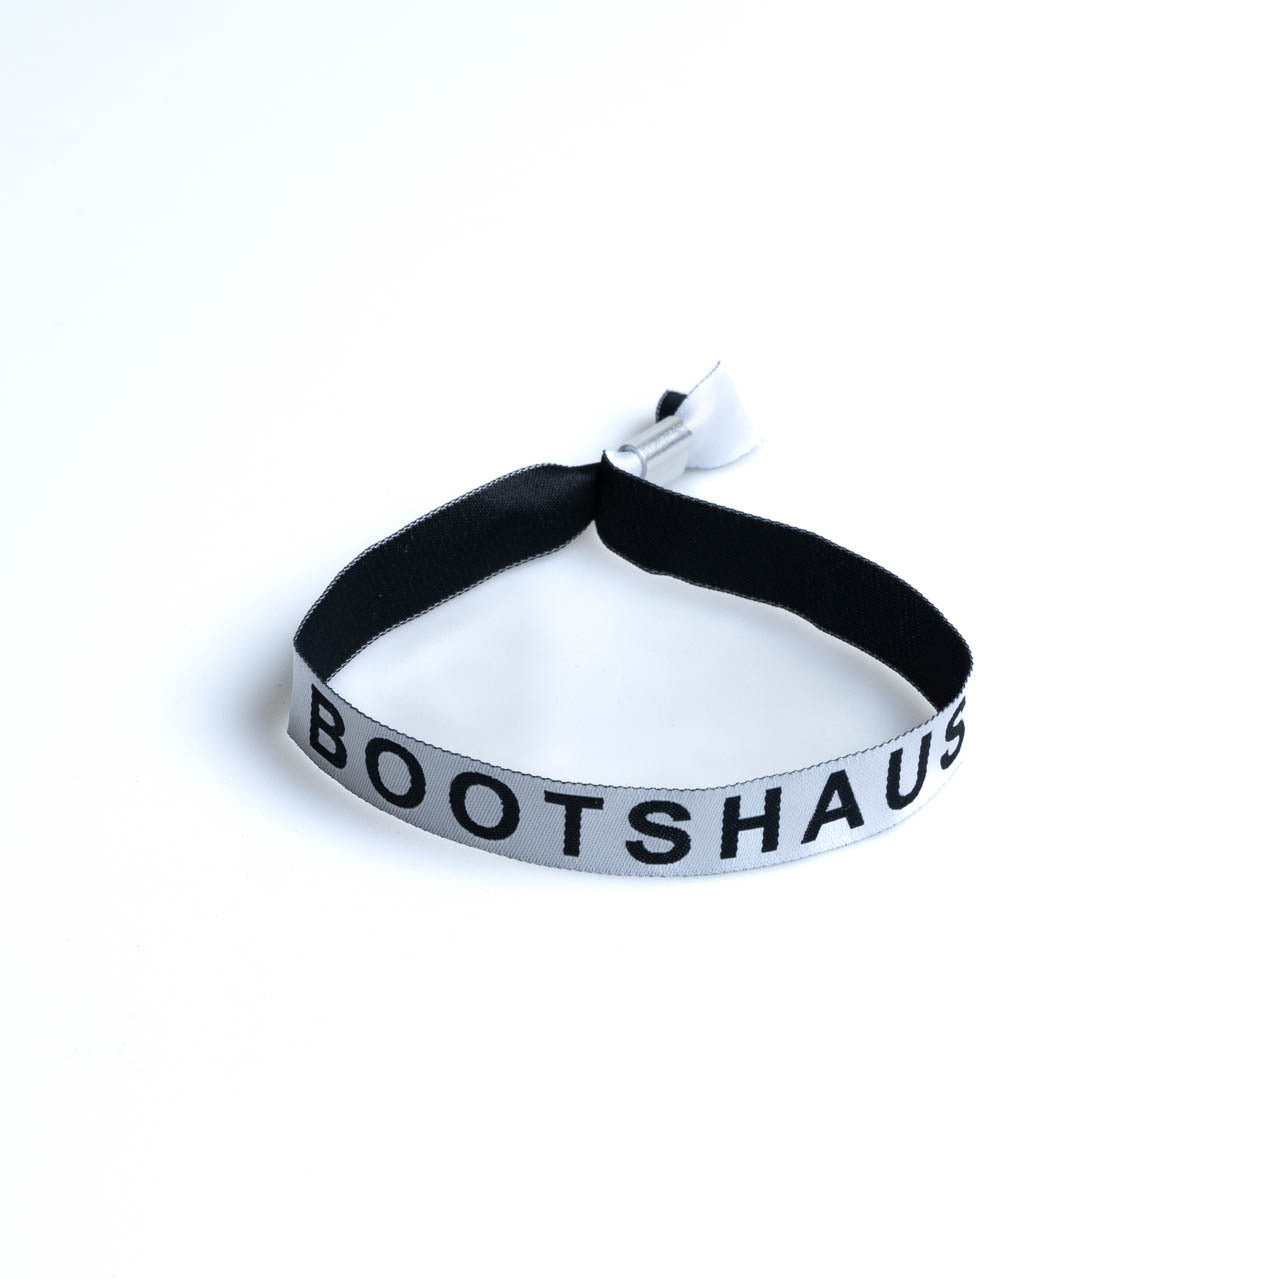 Bootshaus - White Wristband